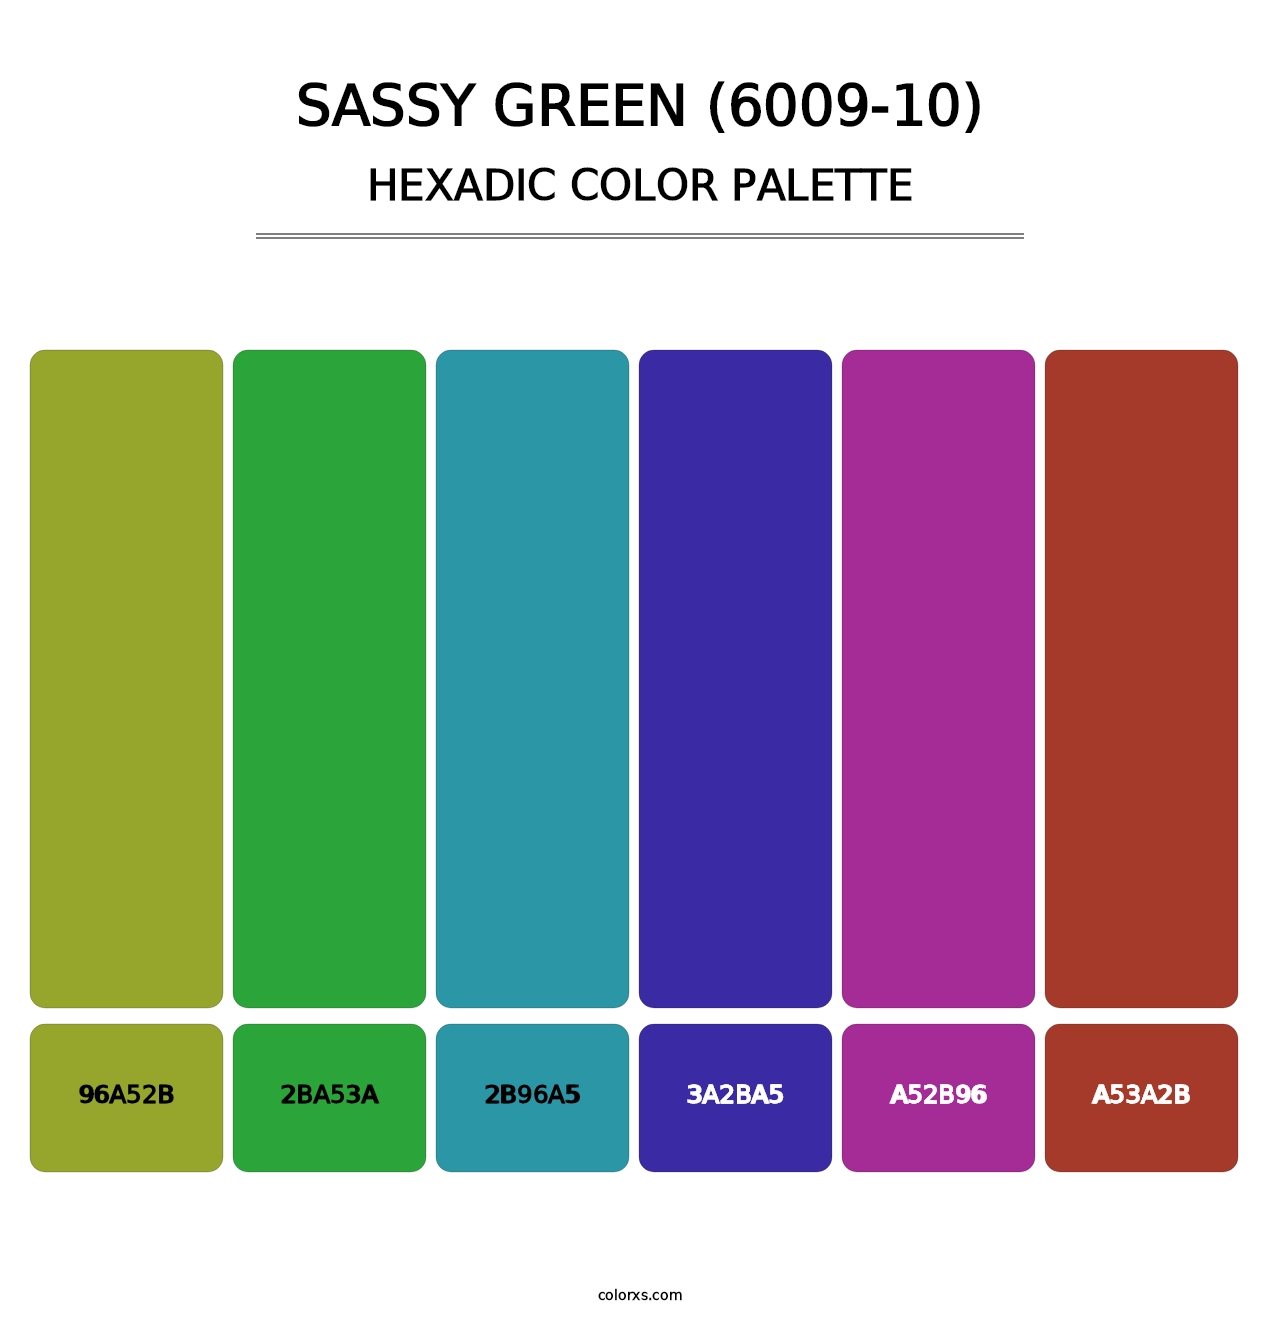 Sassy Green (6009-10) - Hexadic Color Palette